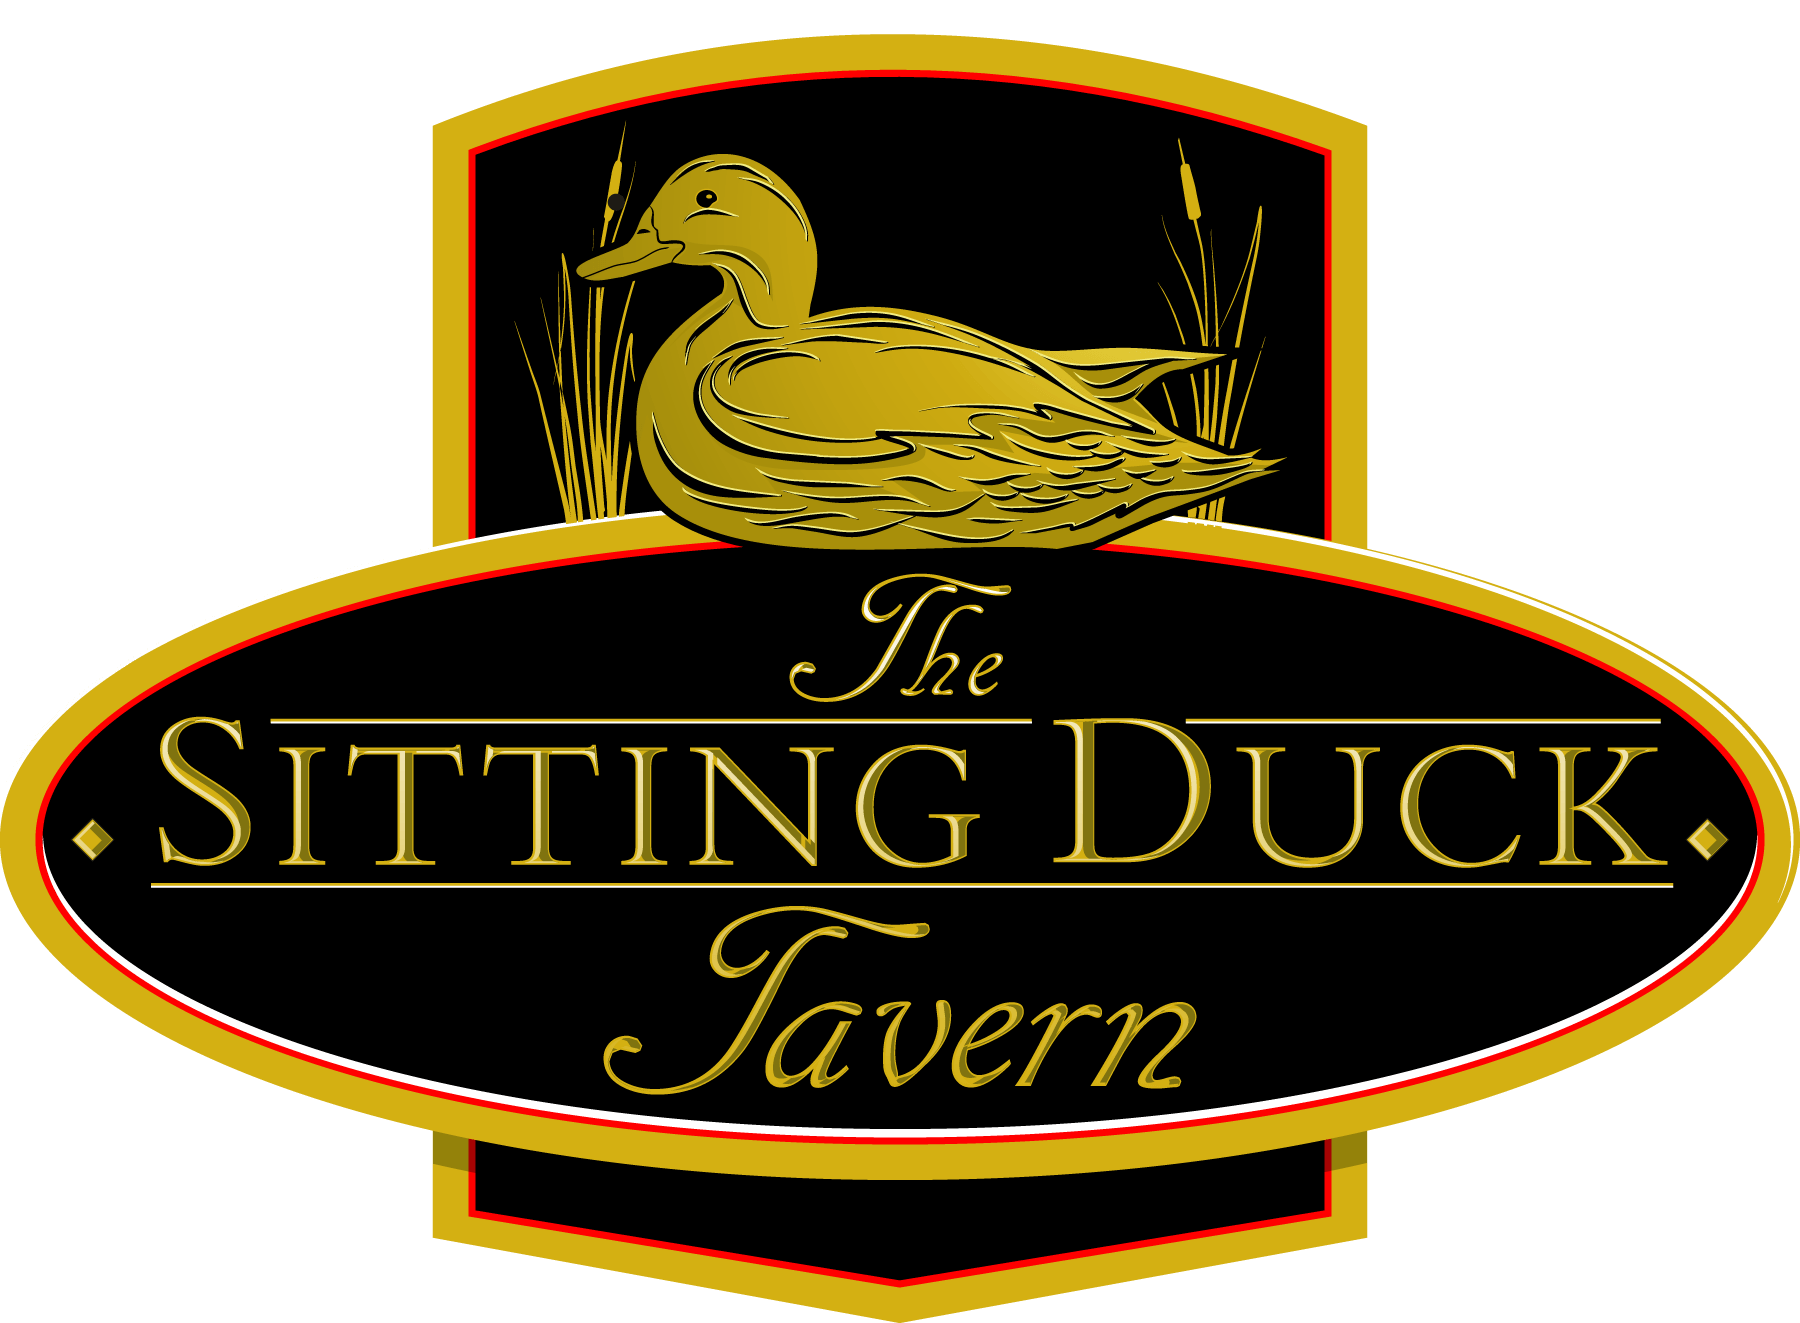 Duck Restaurant Logo - The Sitting Duck Tavern - The Sitting Duck Tavern - Trumbull ...